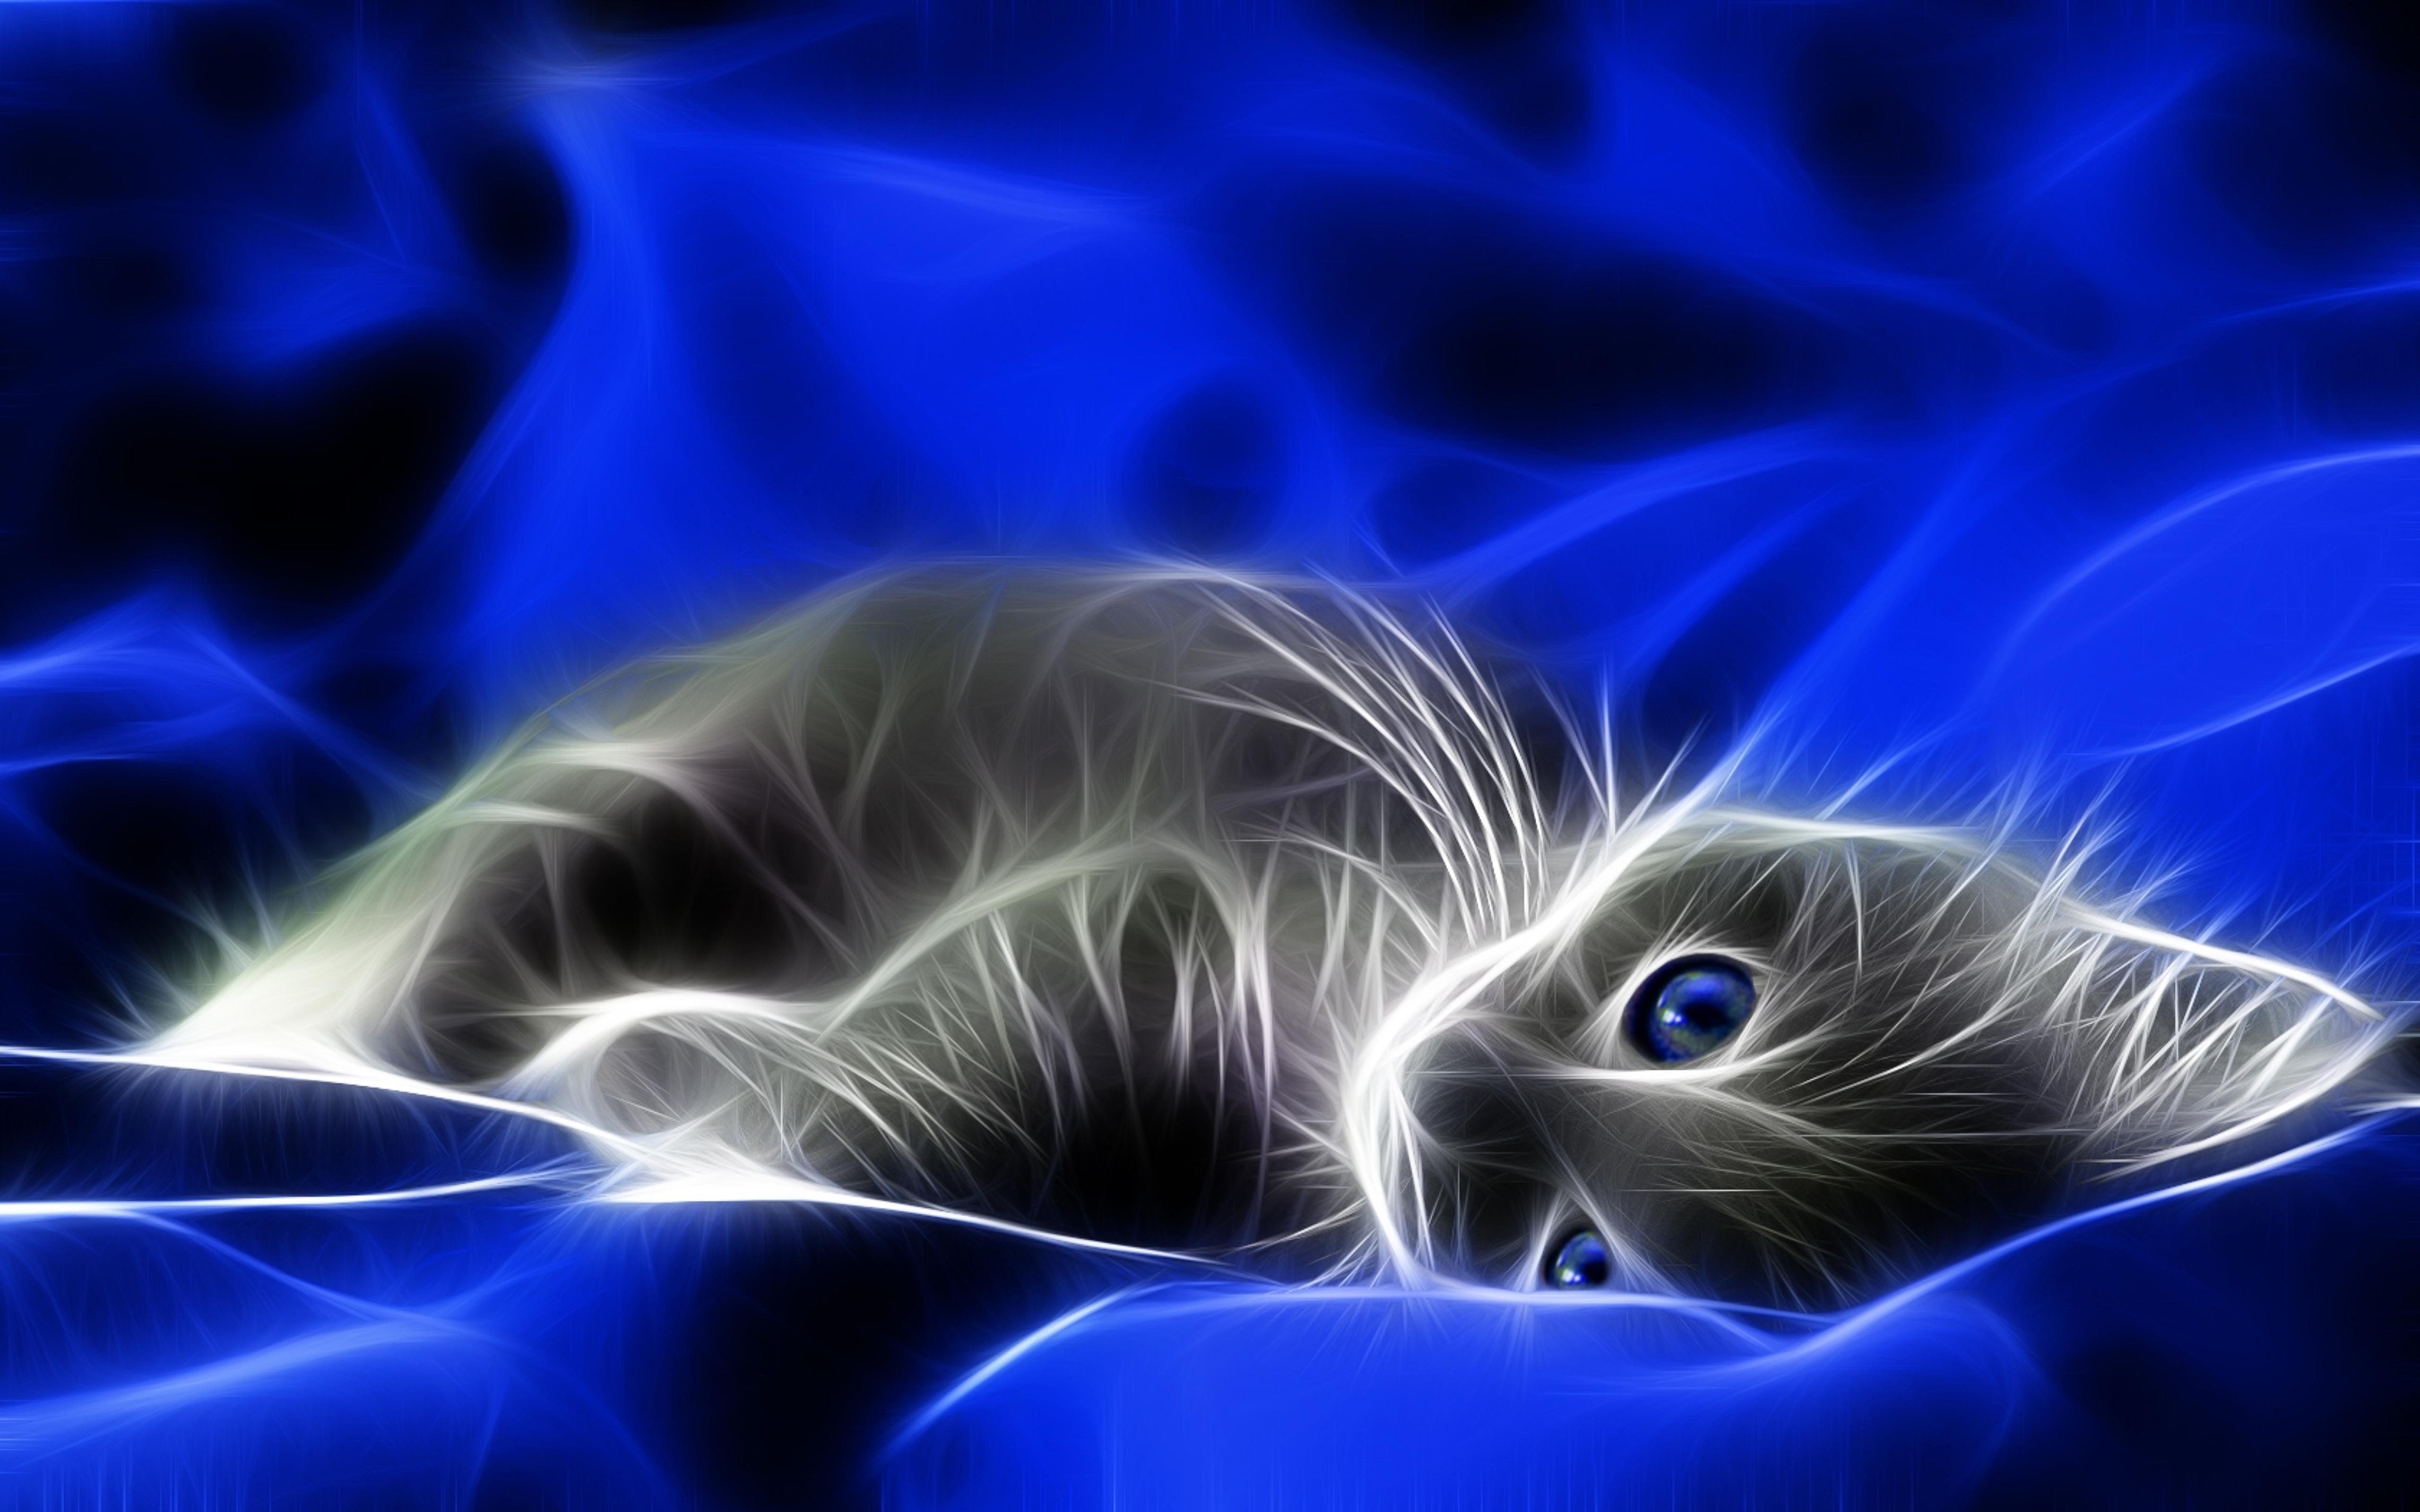 3D digital art - sweet little cat